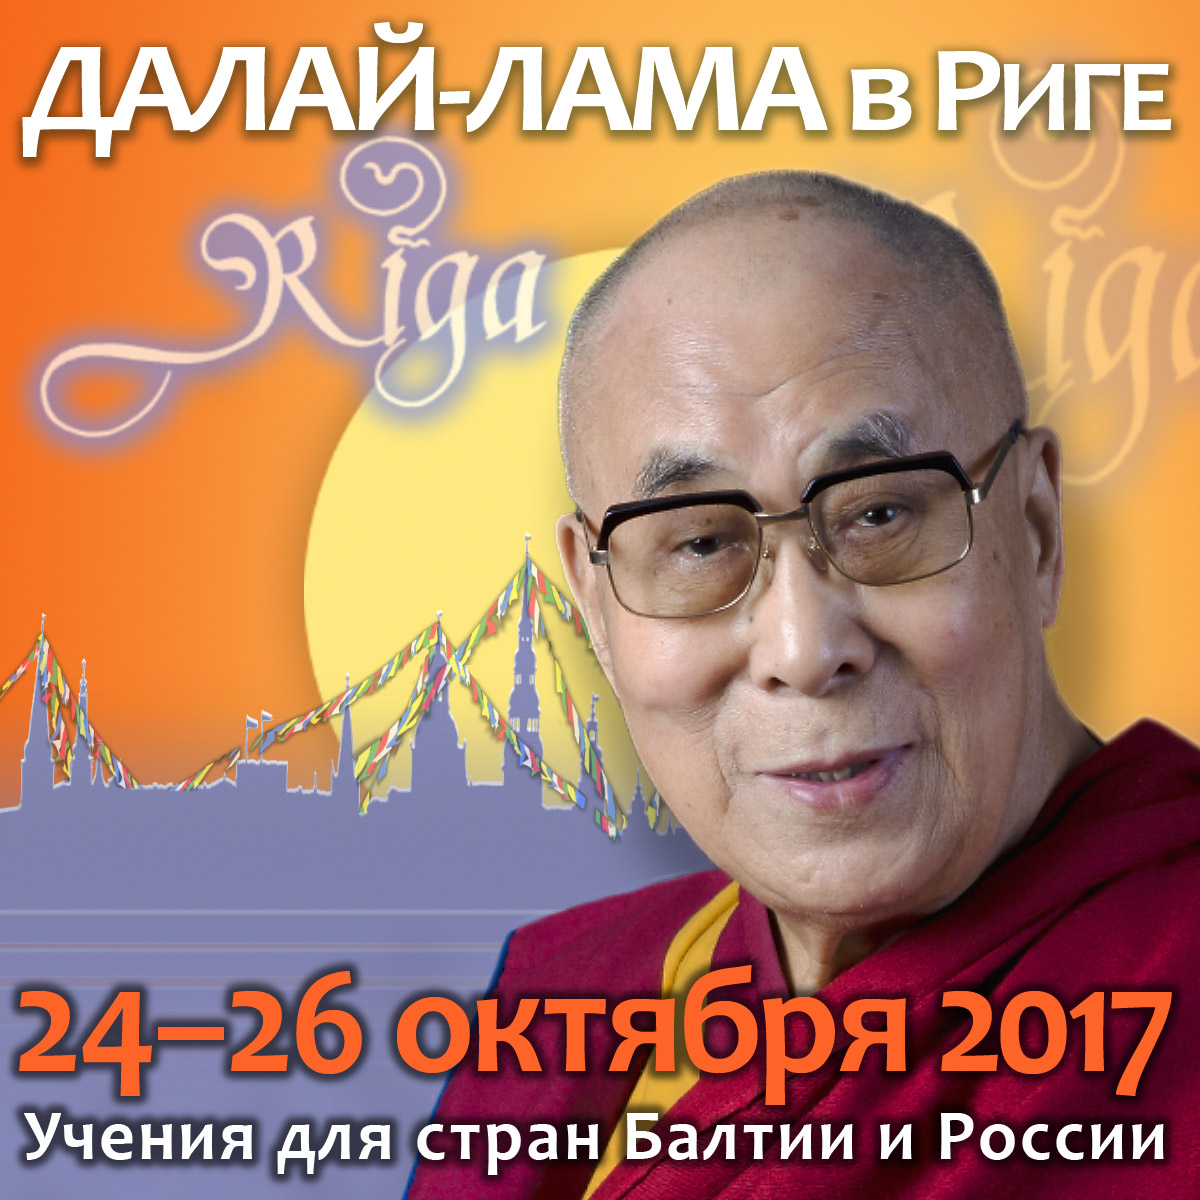 Изменения в расписании Учений Его Святейшества Далай-ламы для стран Балтии и России